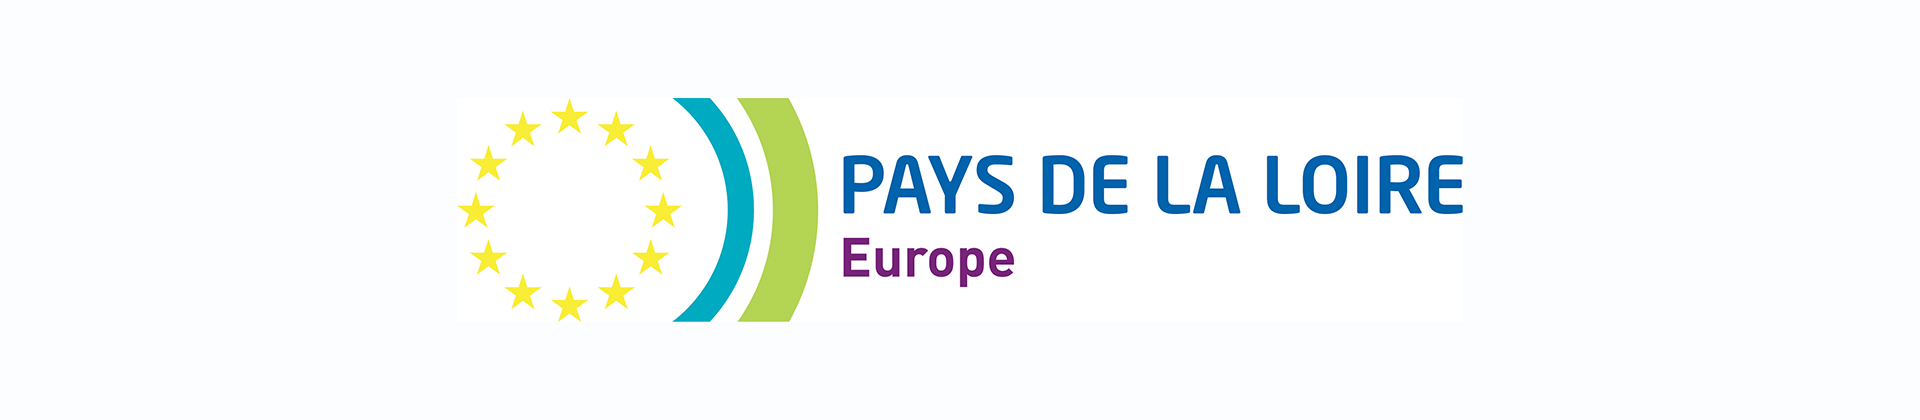 logo Pays de la Loire - Europe